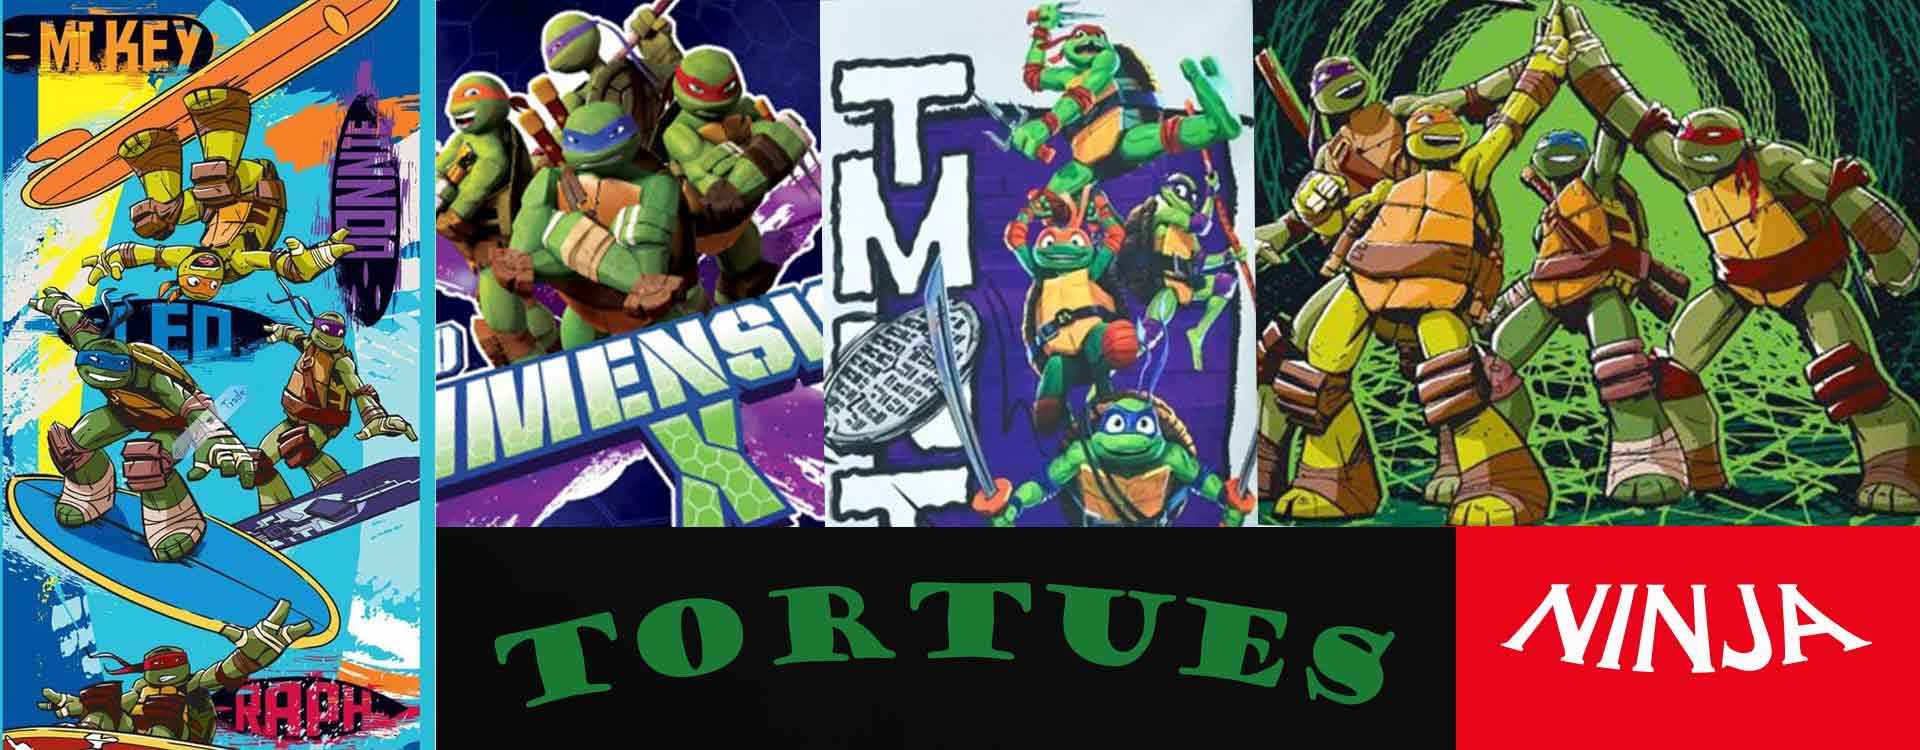 La storia delle Teenage Mutant Ninja Turtles: dalle fogne oscure al grande  schermo